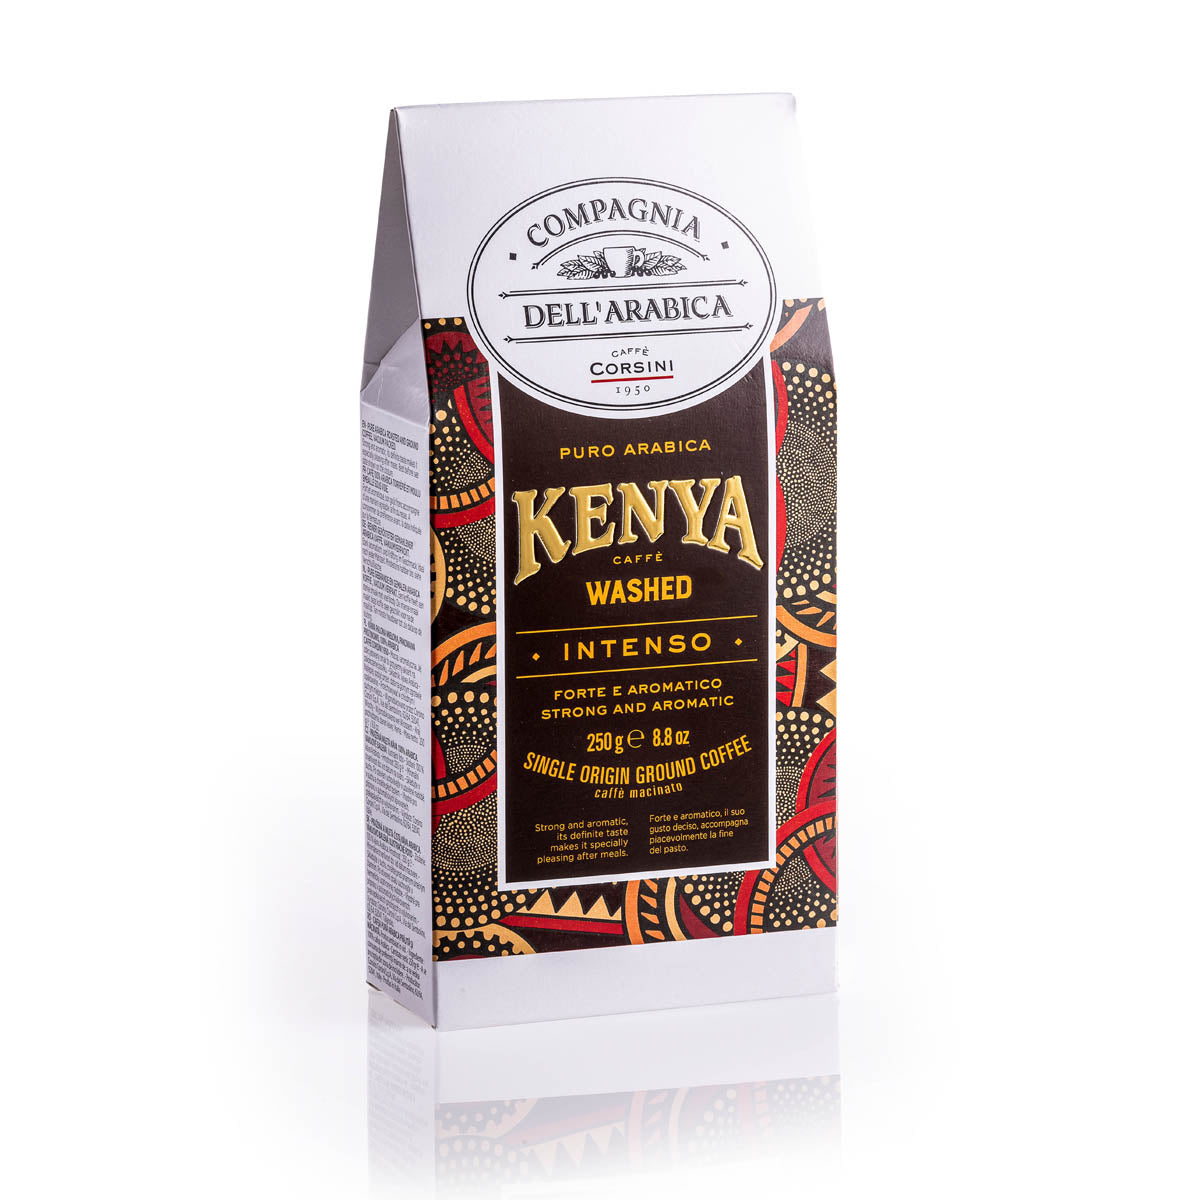 Caffè macinato | Kenya Washed | 100% Arabica | Confezione da 125g | Cartone con 12 confezioni